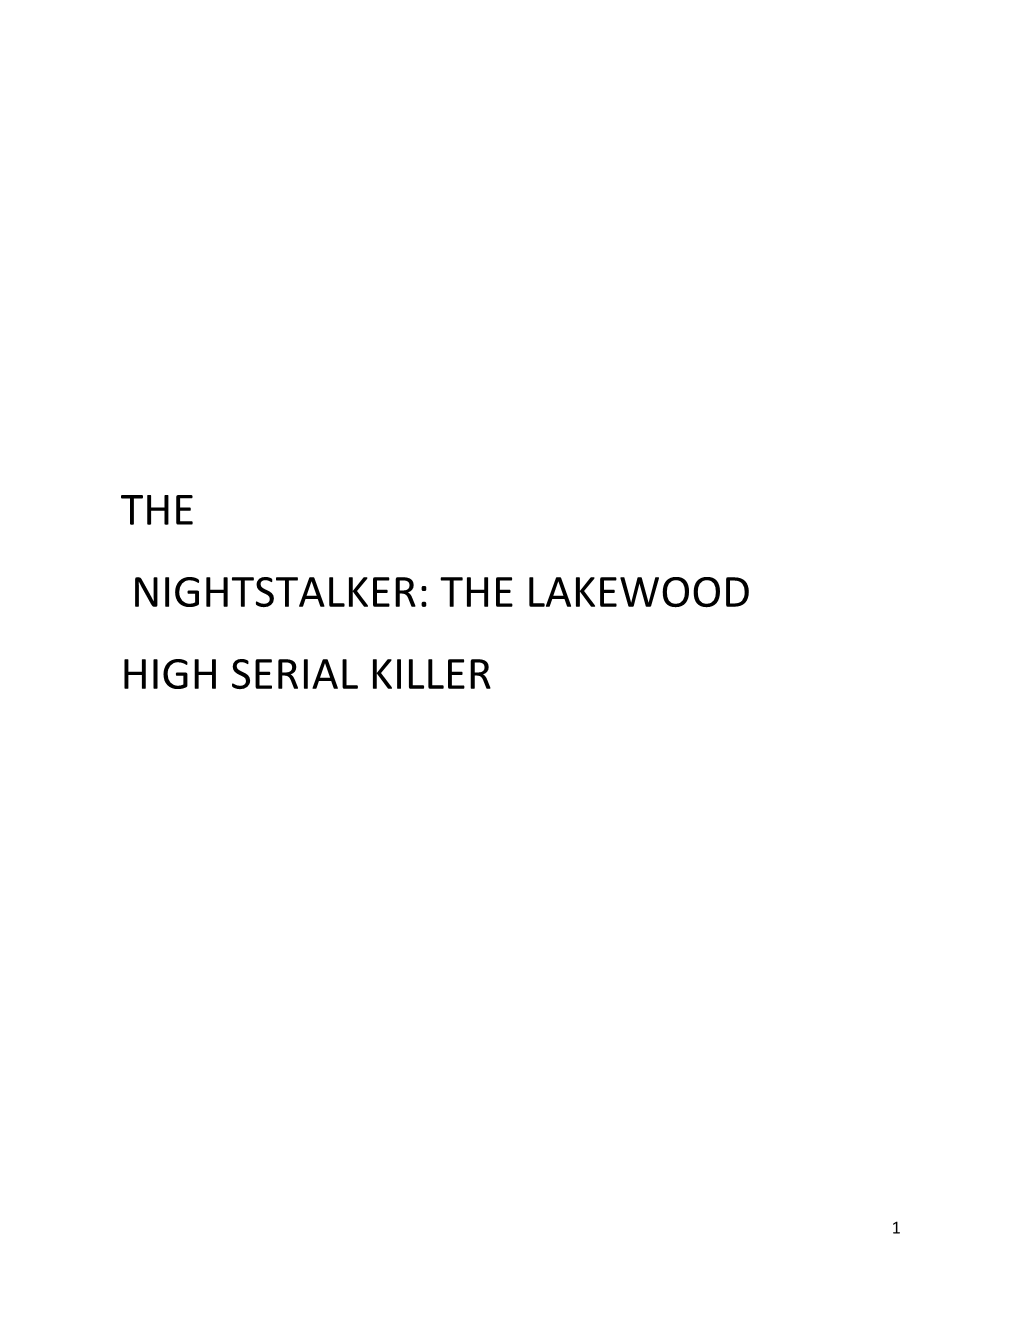 The Lakewood High Serial Killer